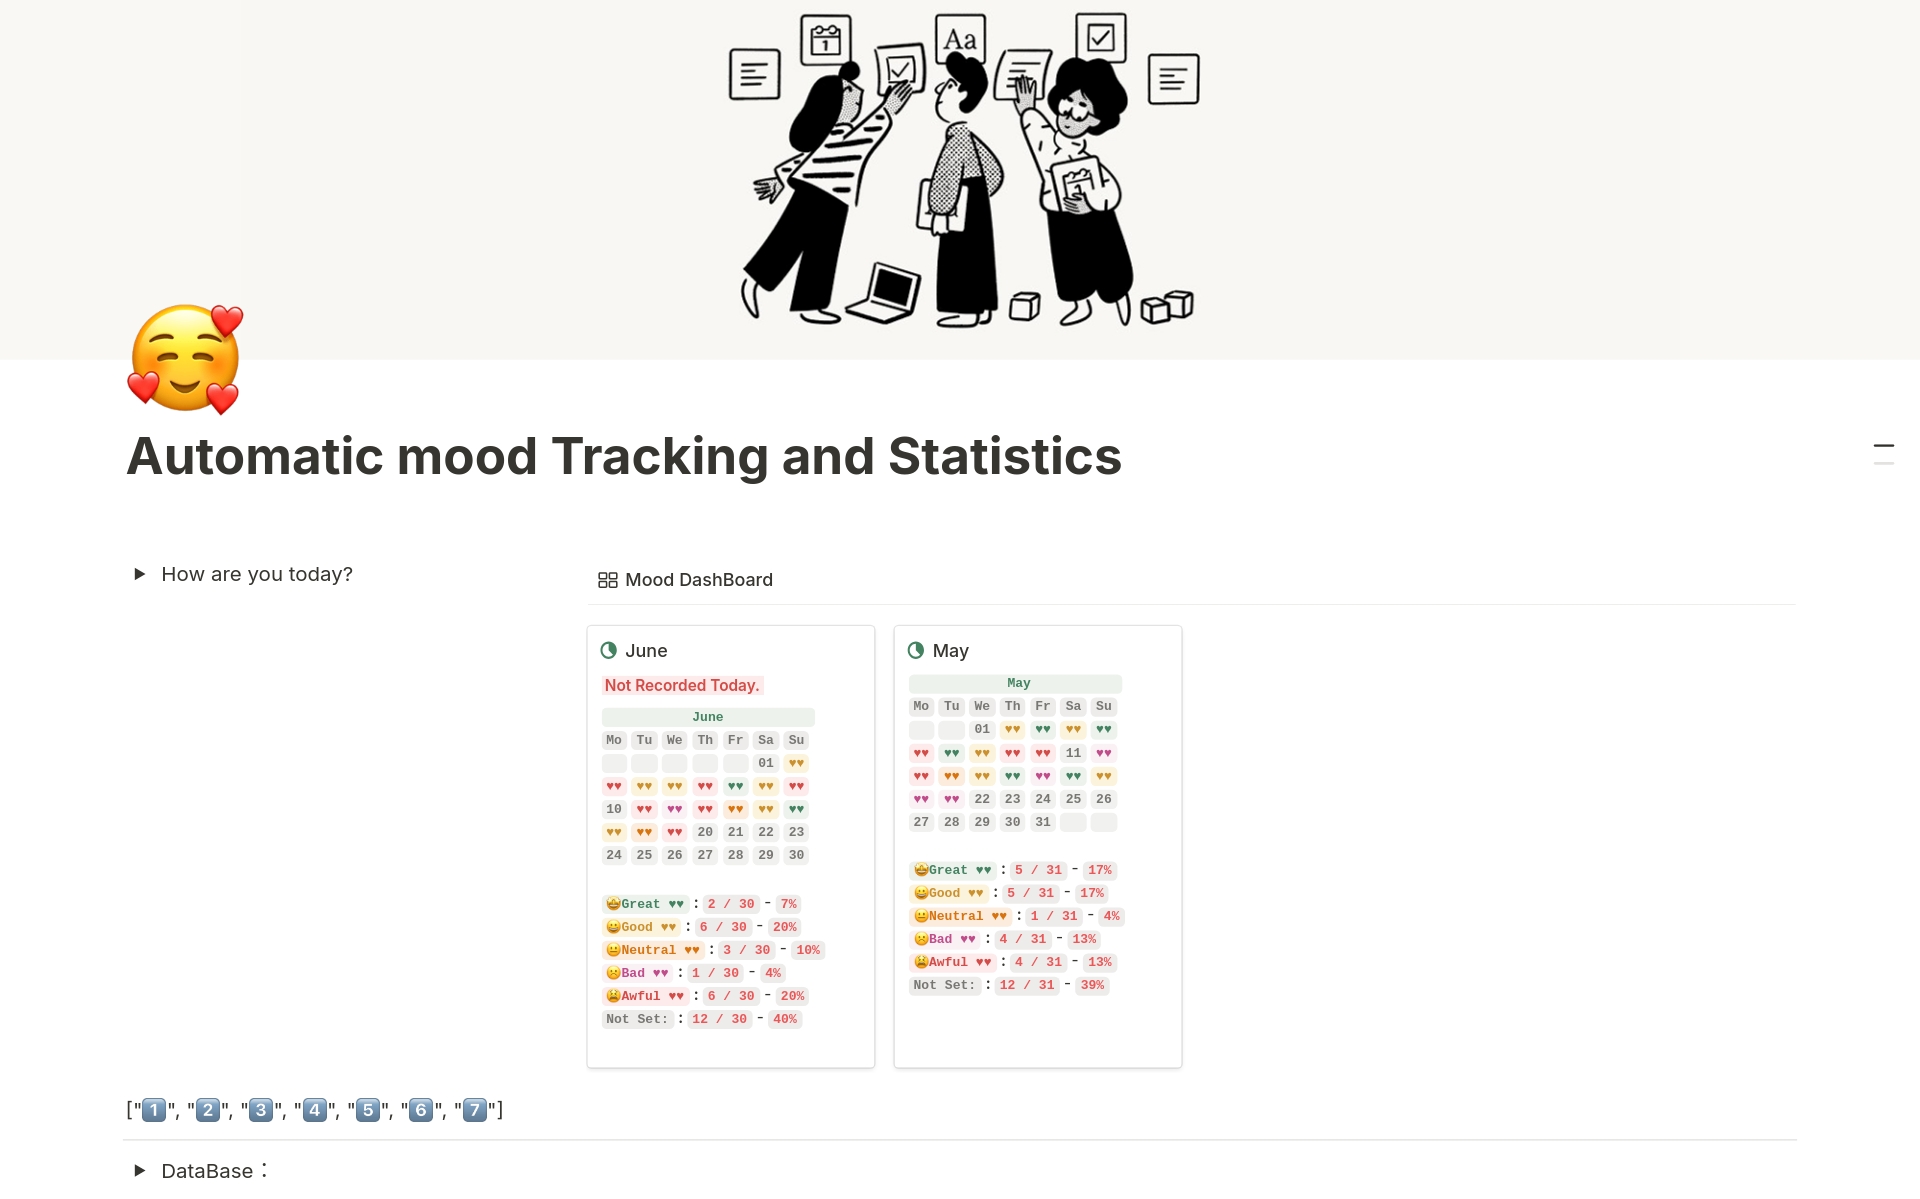 Uma prévia do modelo para Automatic mood Tracking and Statistics